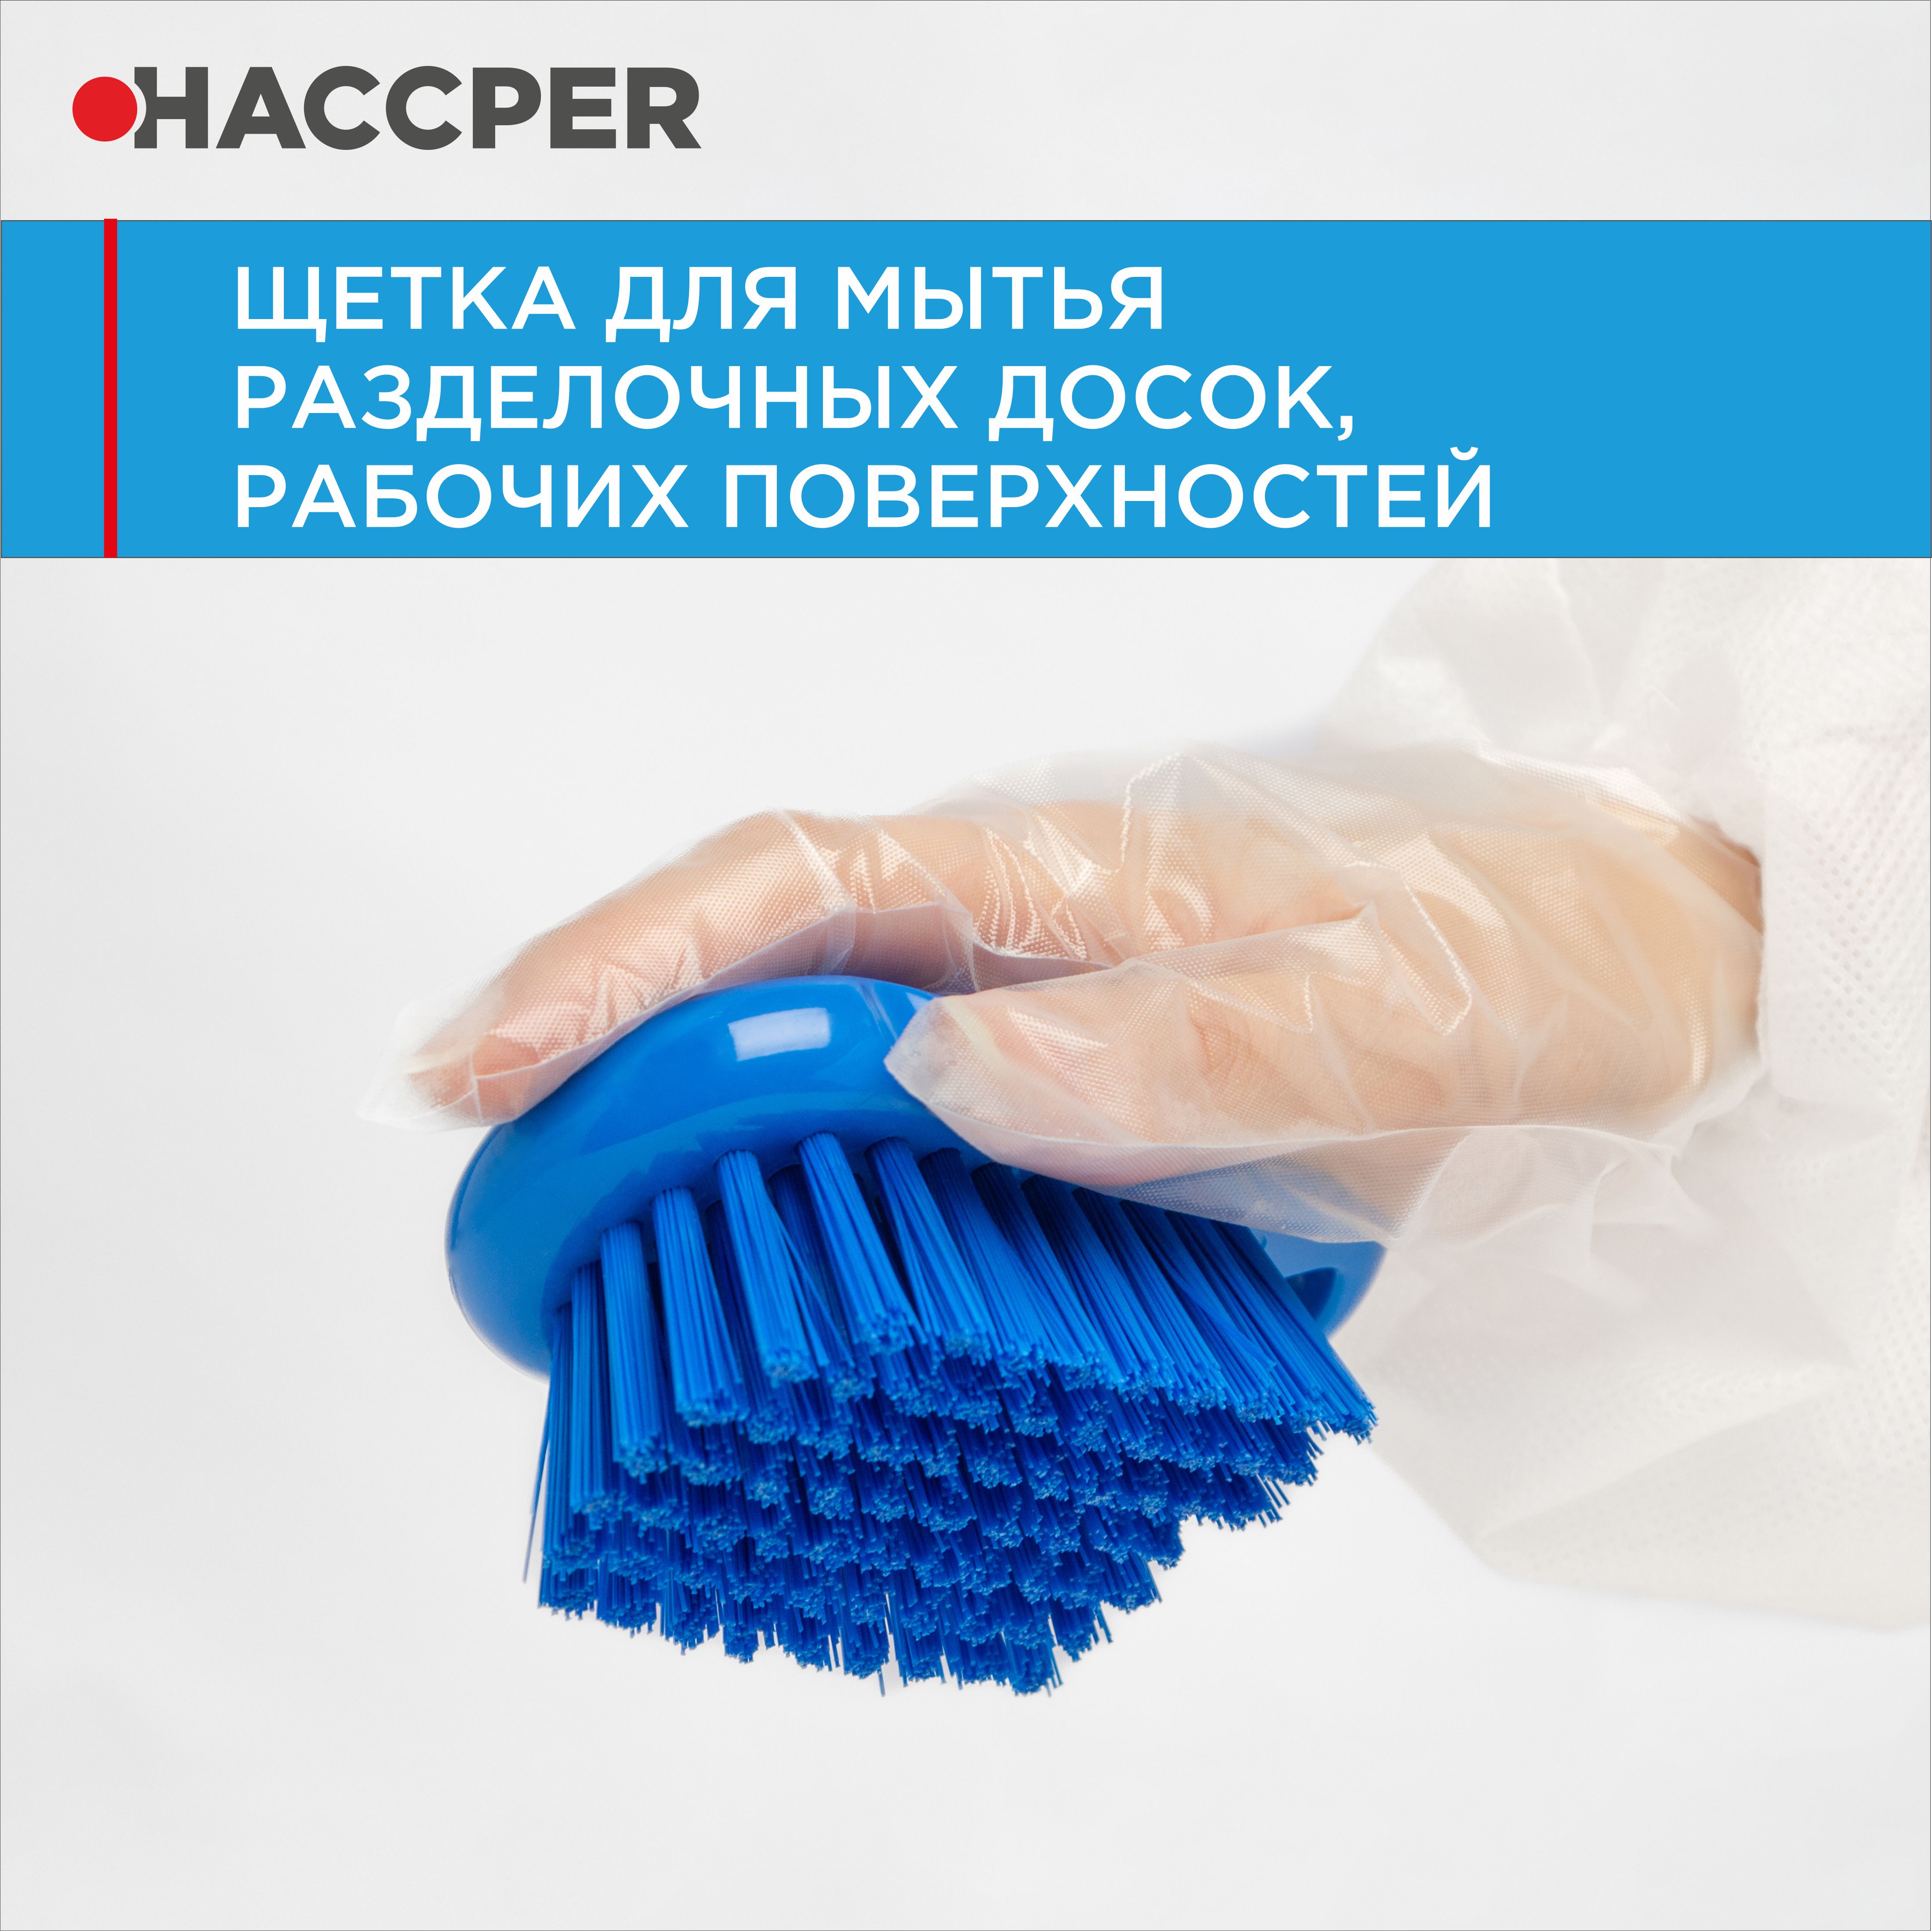 Щетка HACCPER для мытья разделочных досок, рабочих поверхностей, синяя